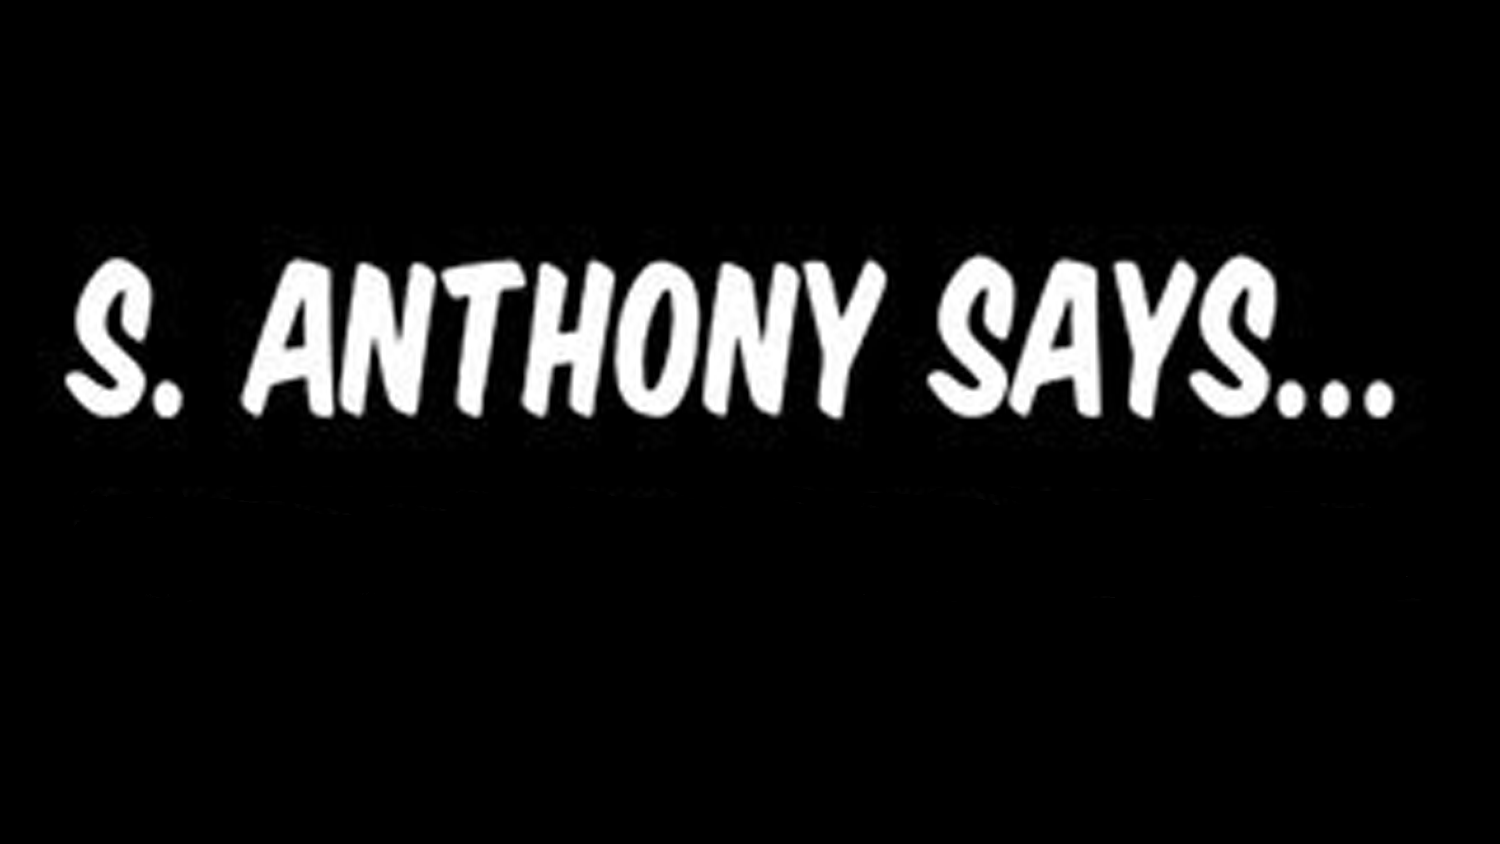 S. Anthony Says...